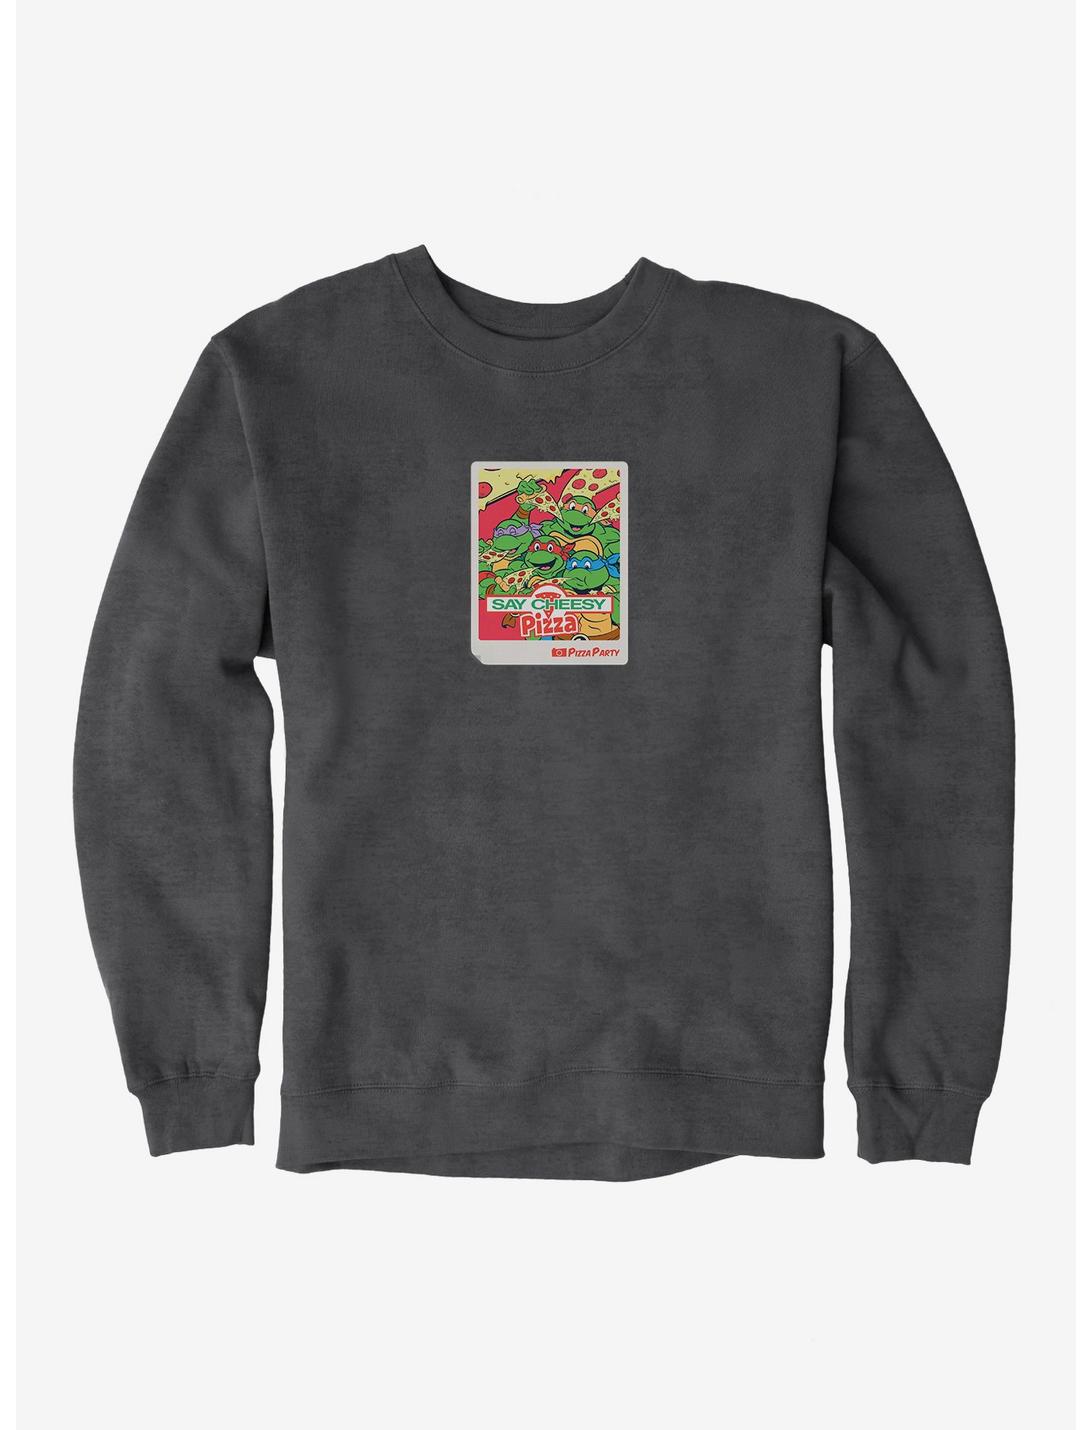 Teenage Mutant Ninja Turtles Say Cheesy Pizza Photo Sweatshirt, CHARCOAL HEATHER, hi-res